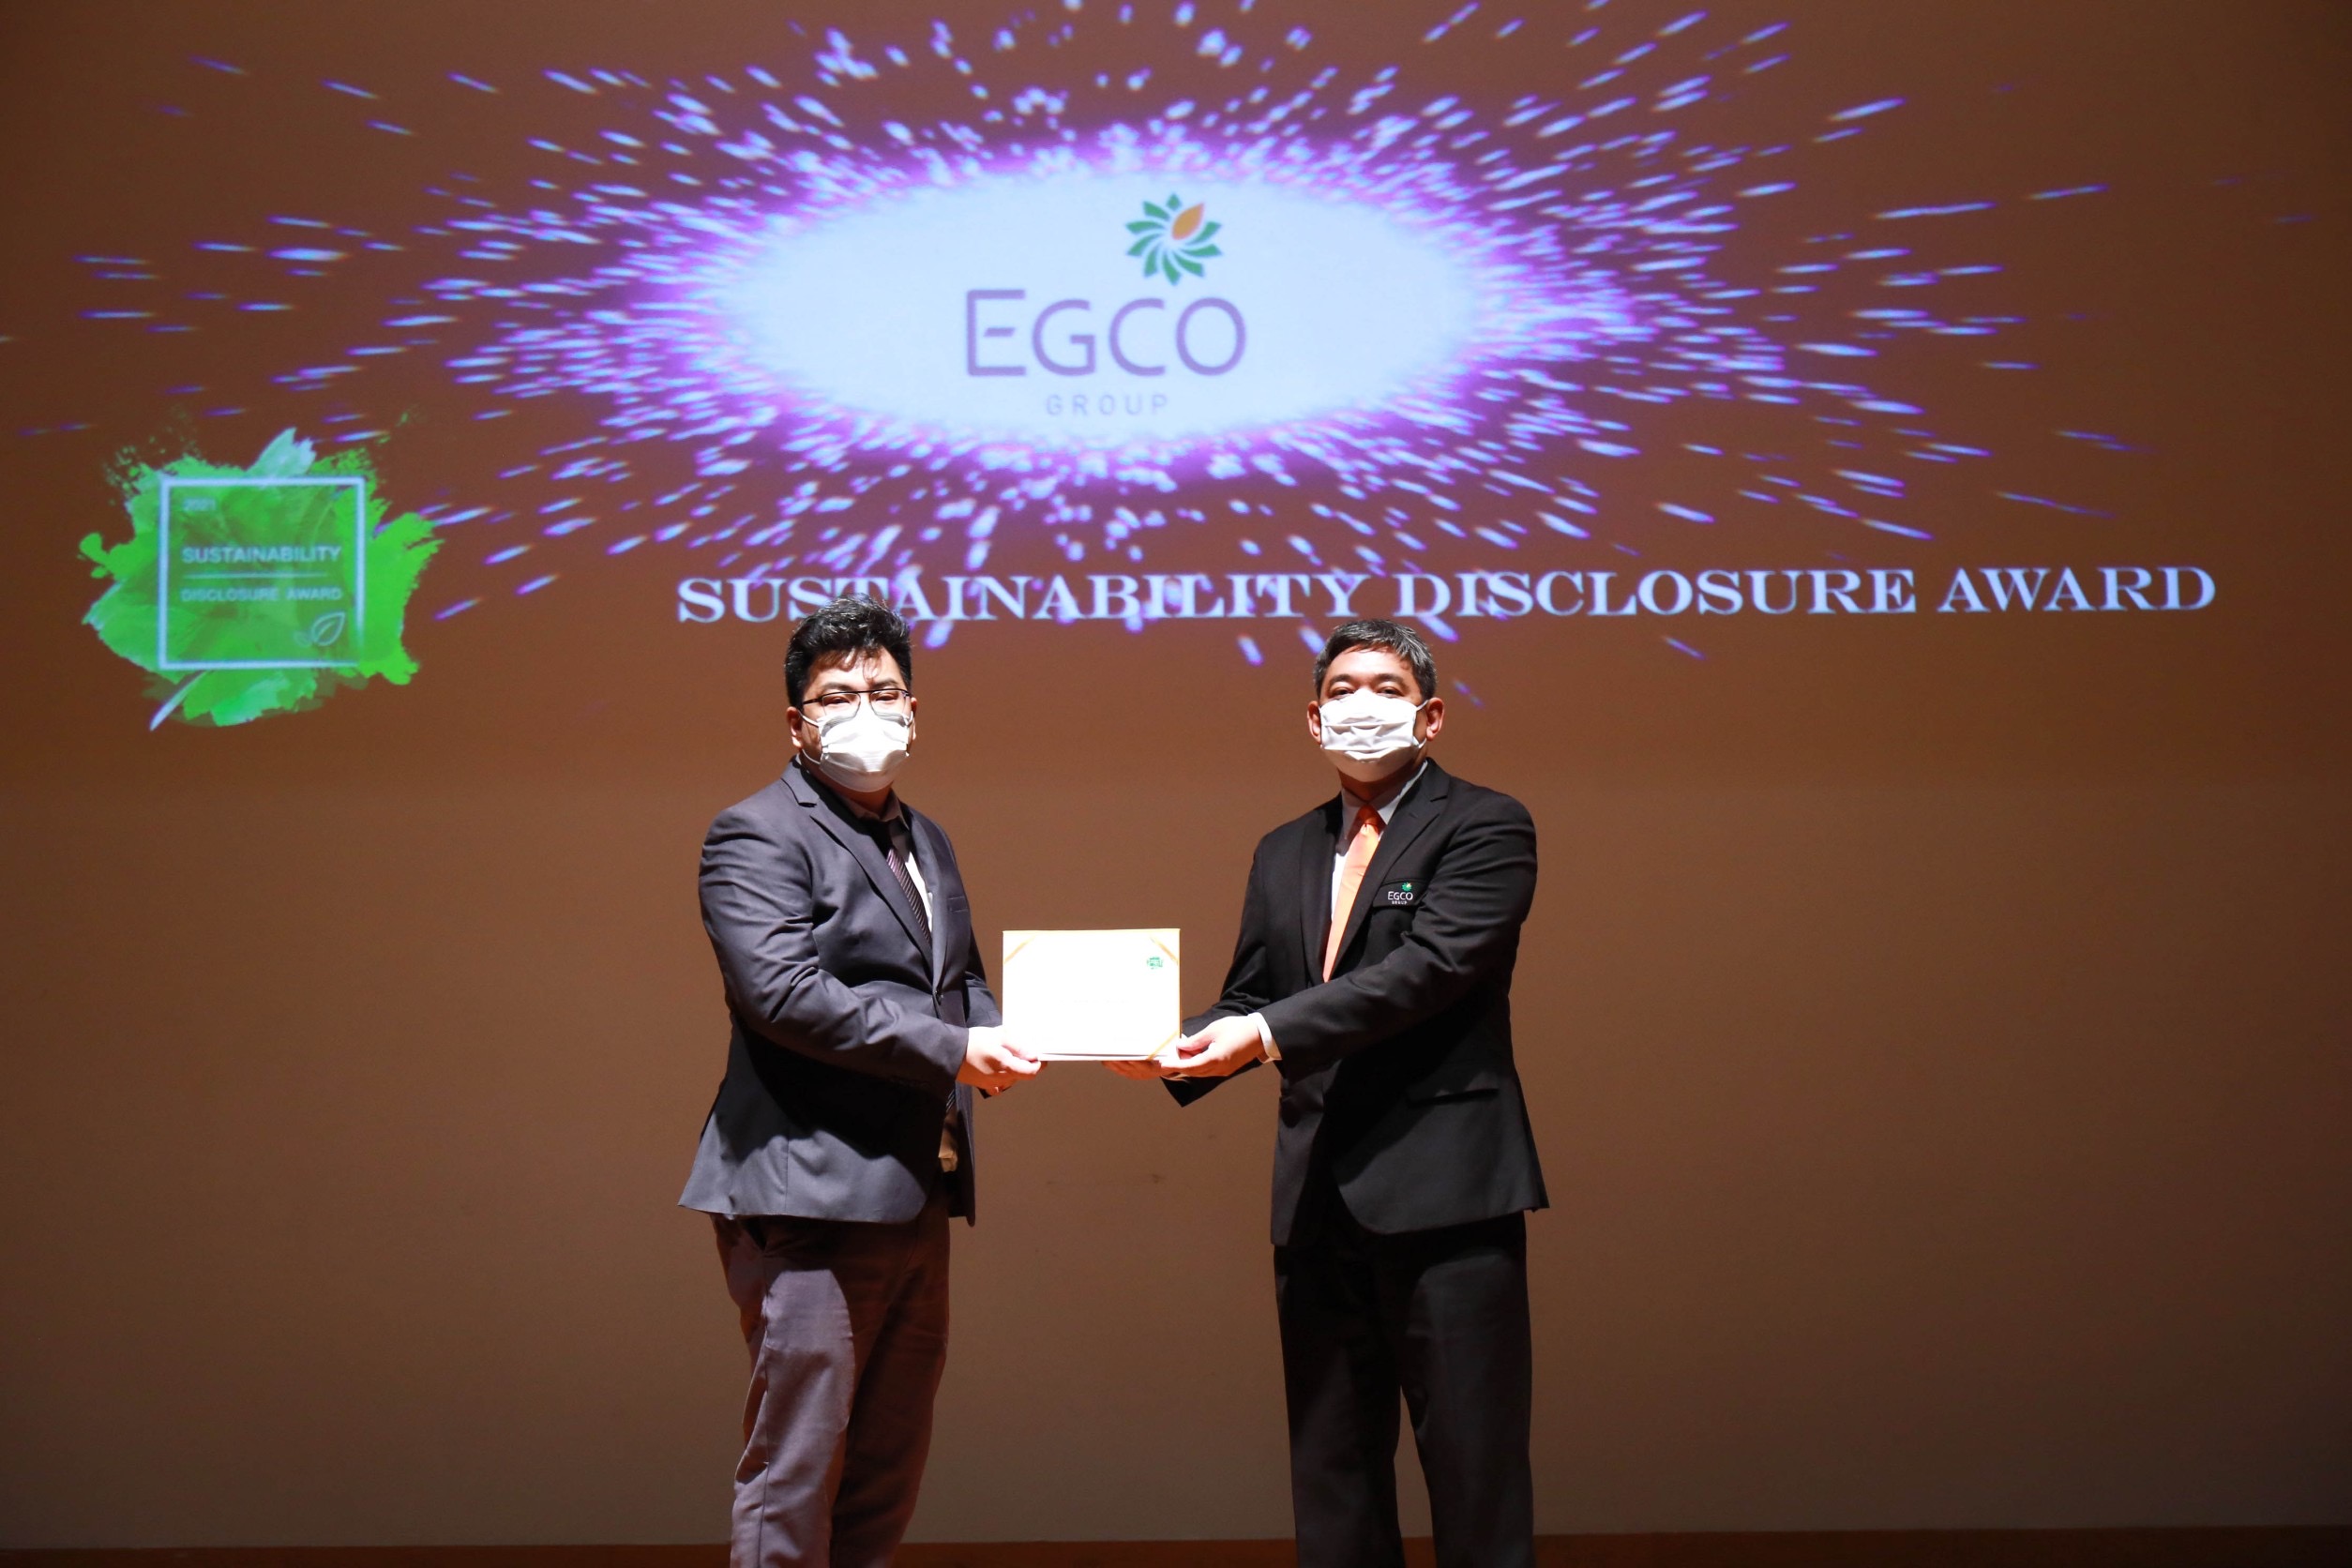 เอ็กโก กรุ๊ป คว้ารางวัลเกียรติคุณ “Sustainability Disclosure Award” ต่อเนื่องปีที่ 3 ตอกย้ำความโปร่งใสในการเปิดเผยข้อมูลความยั่งยืน